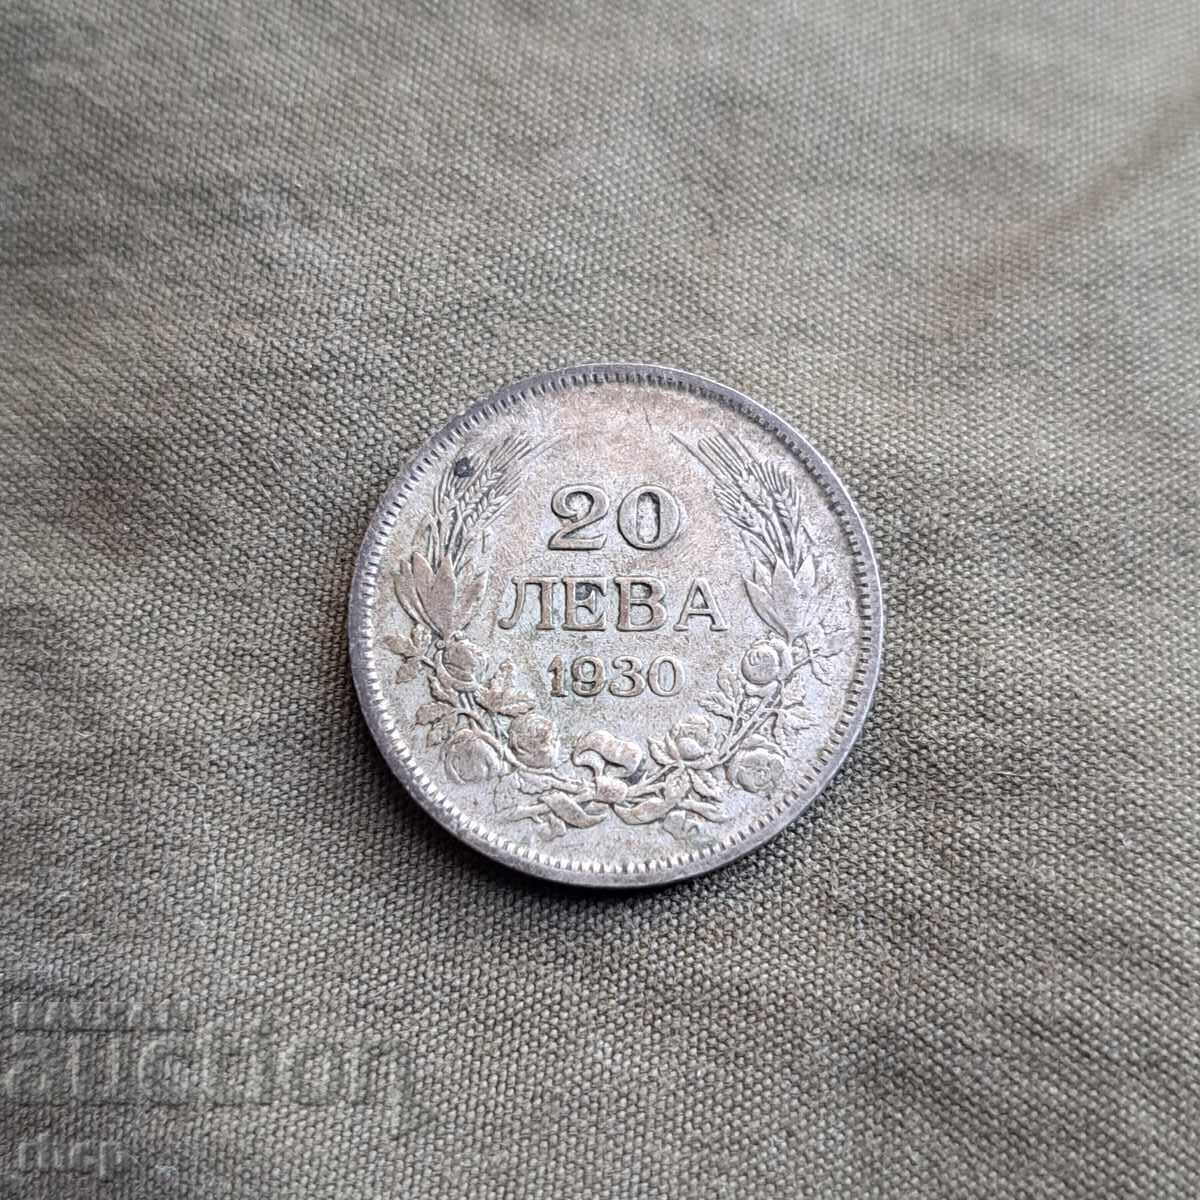 20 лева 1930 монета ....1